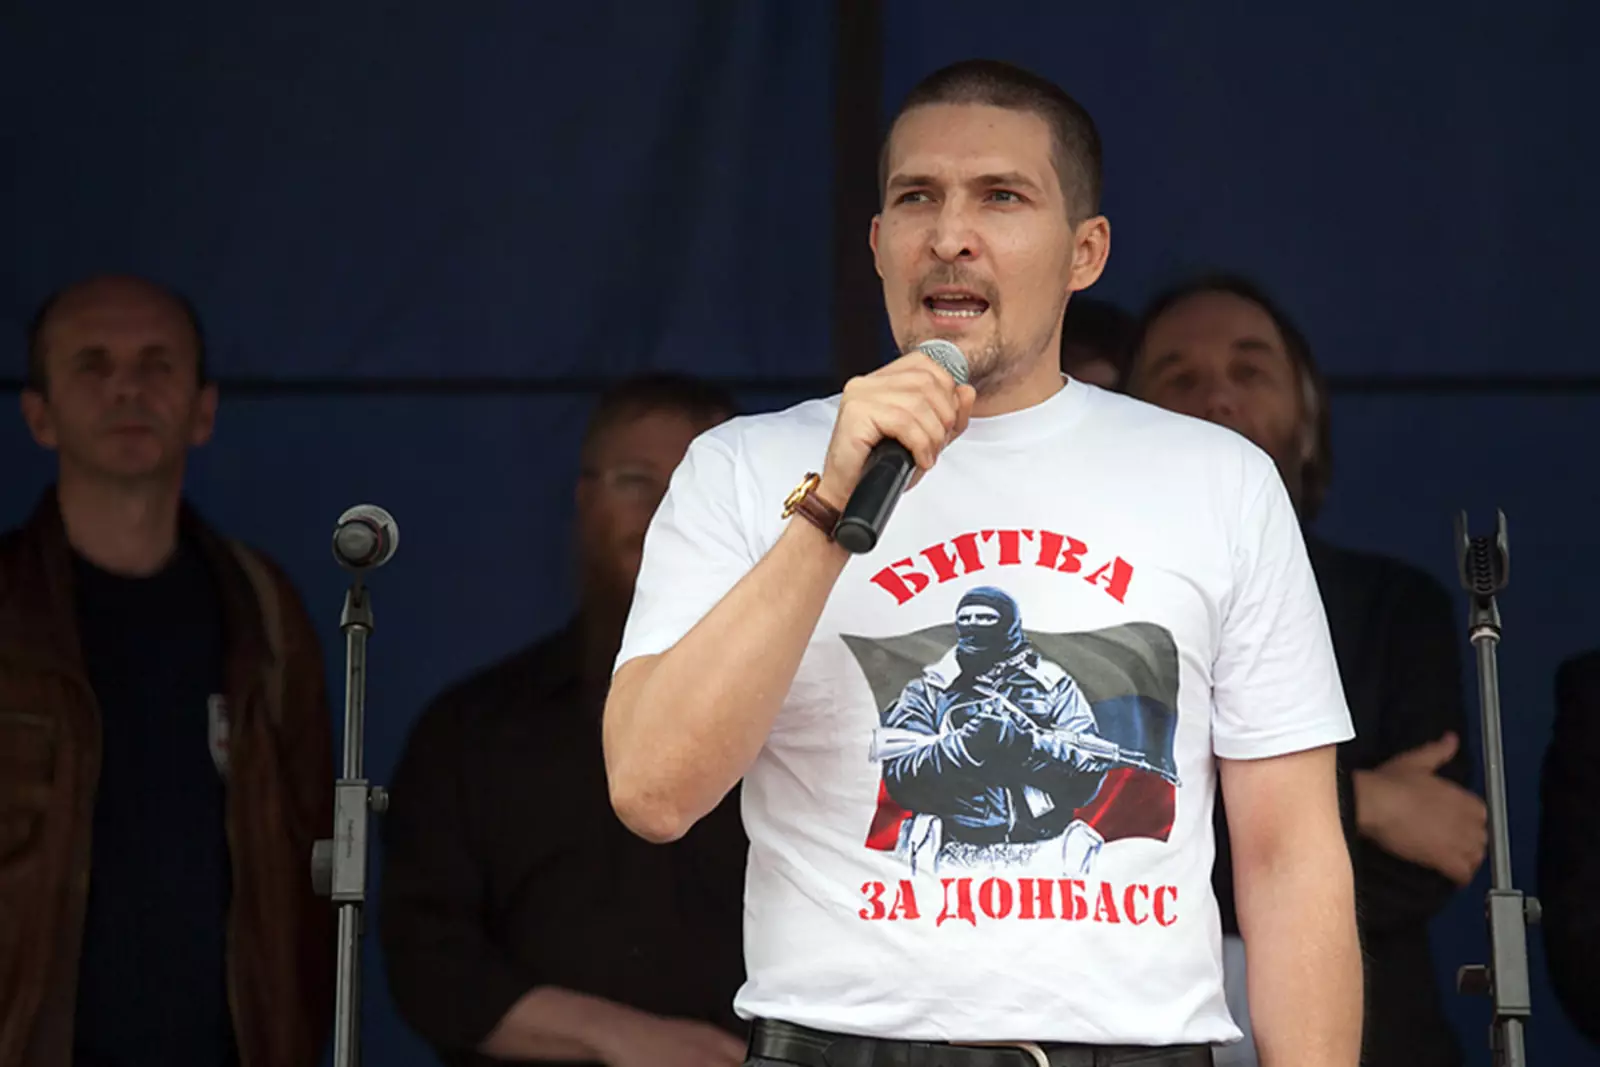 Лидер движения «Битва за Донбасс» Алексей Живов 